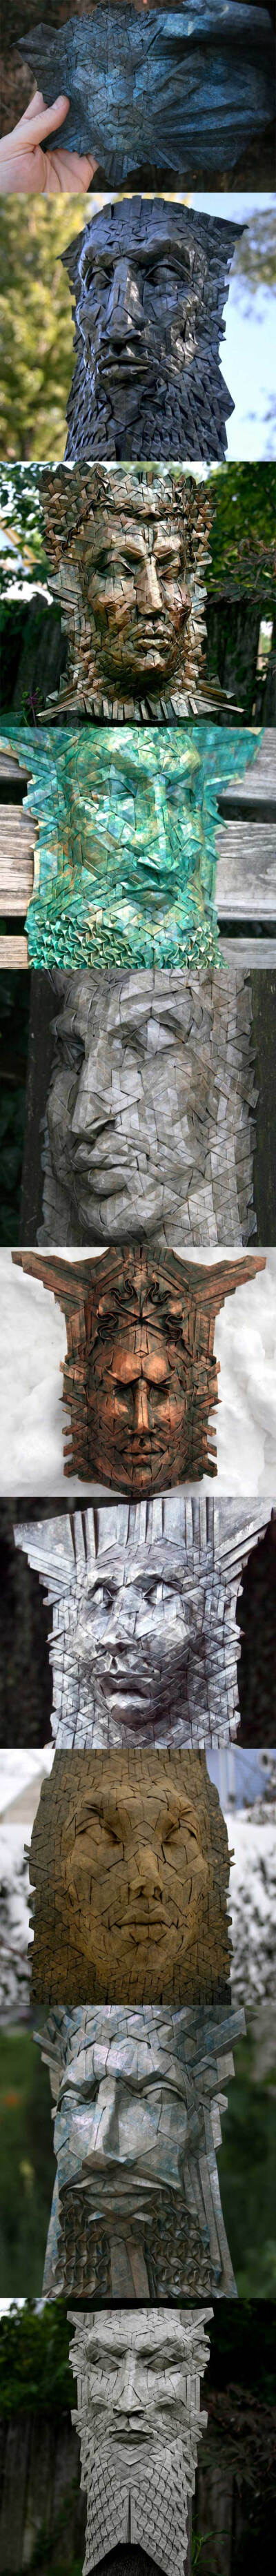 Joel Cooper是一位沉醉于“造纸术”的艺术家，他在不使用胶水的情况下，将纸折叠成六角形，然后再拼装成一个个具有几何纹路的面具，Cooper称之为“镶嵌折纸”。